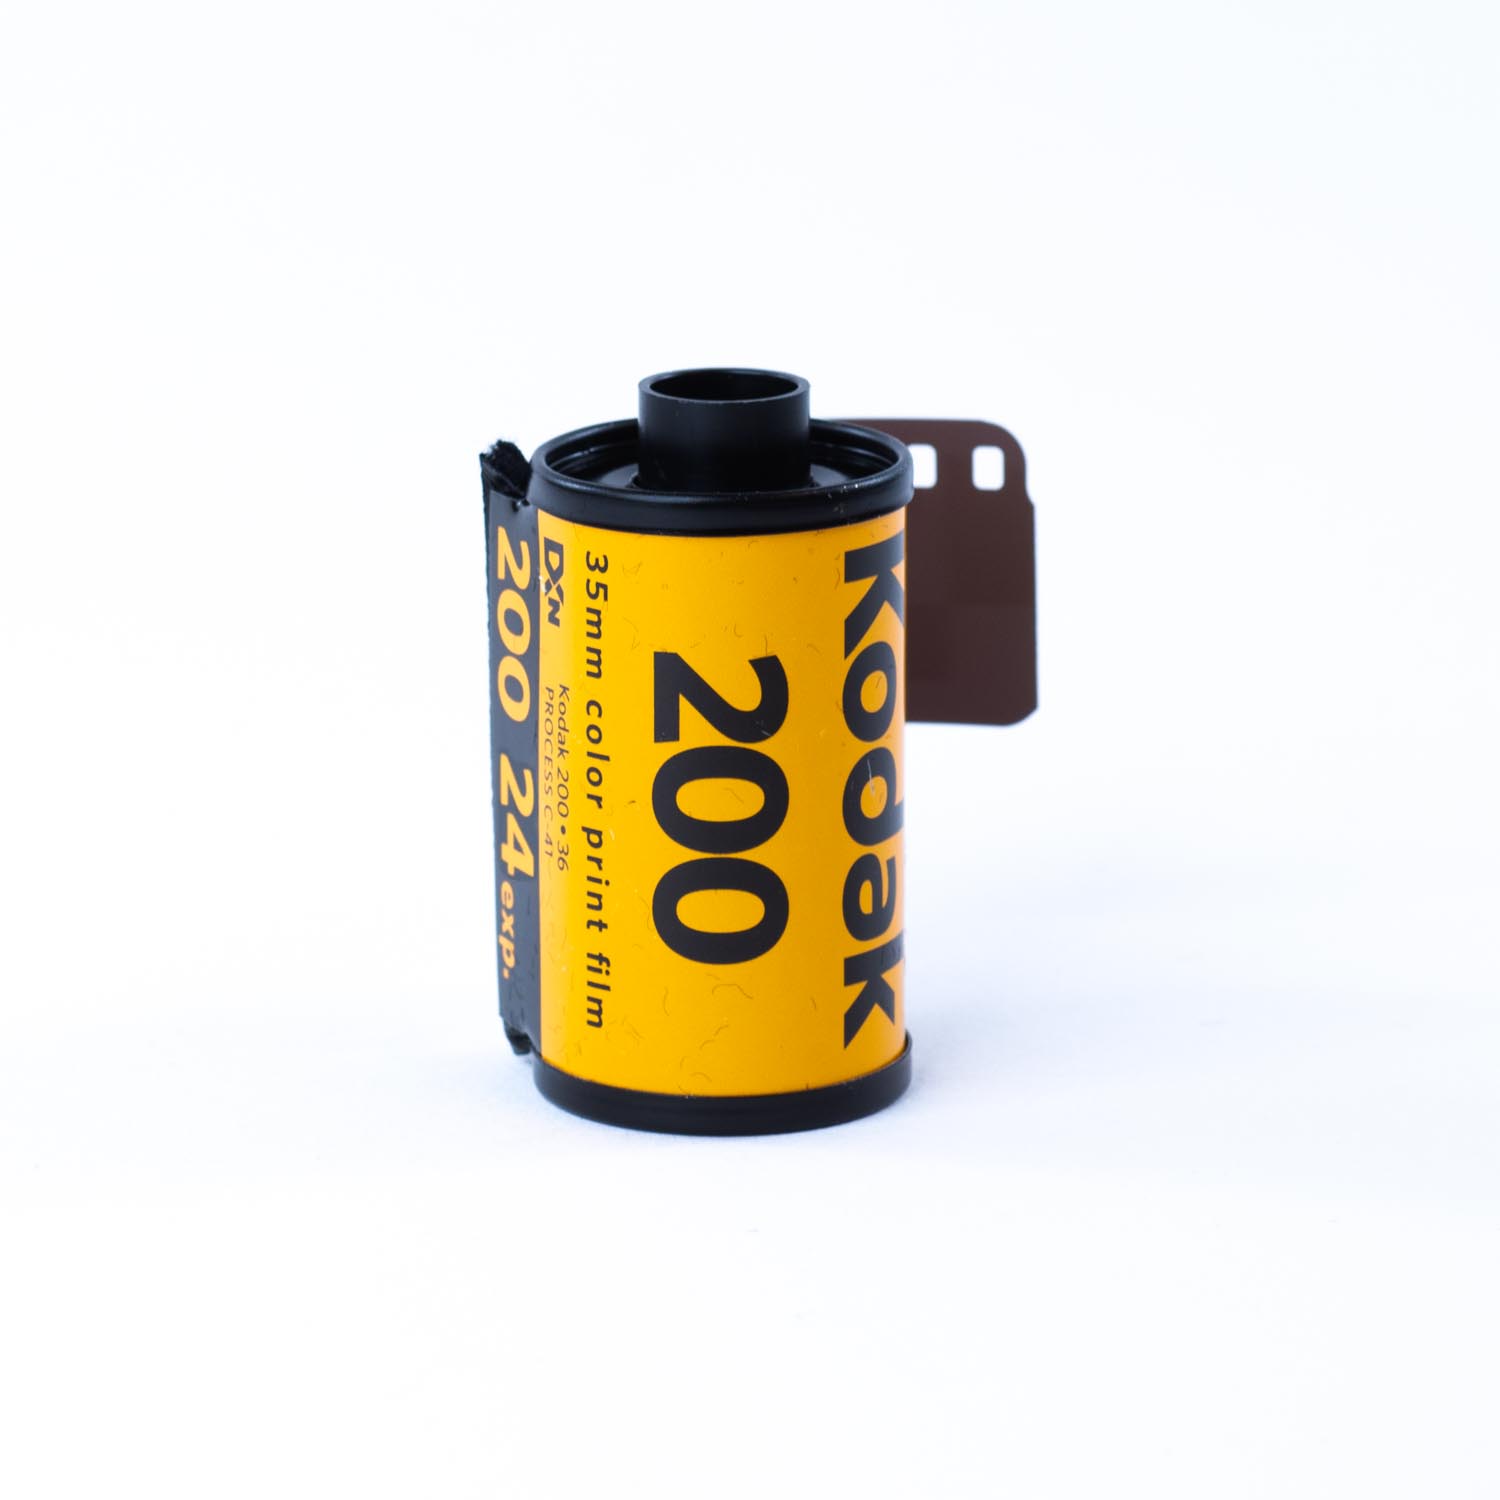 TVignette pour Kodak GOLD 200, 24 poses, Rouleau